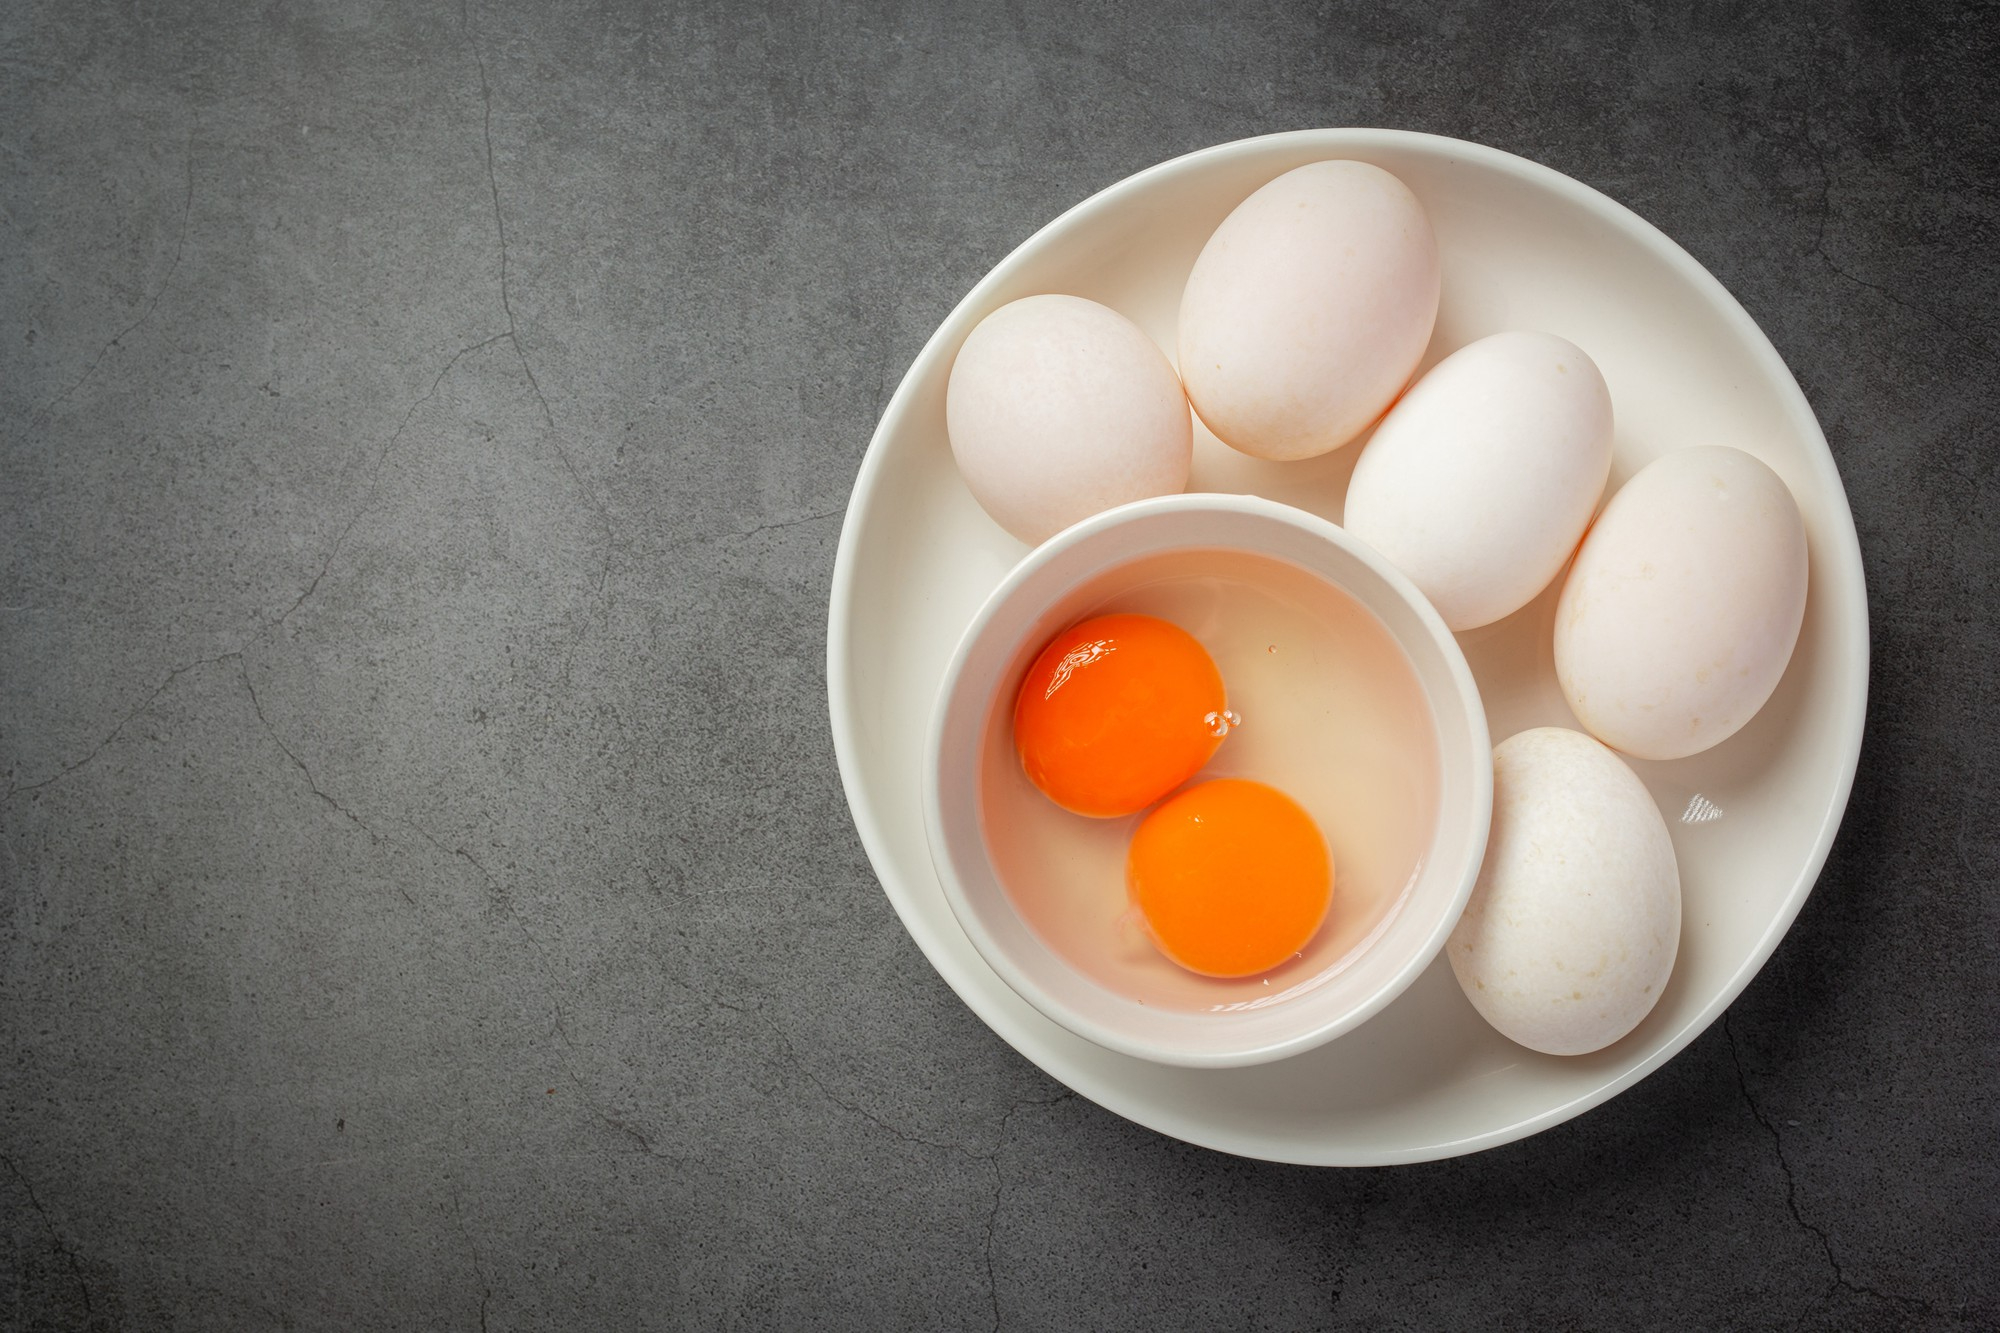 Trung bình 1 quả trứng vịt khi luộc lên sẽ cung cấp khoảng 90 - 130 calo